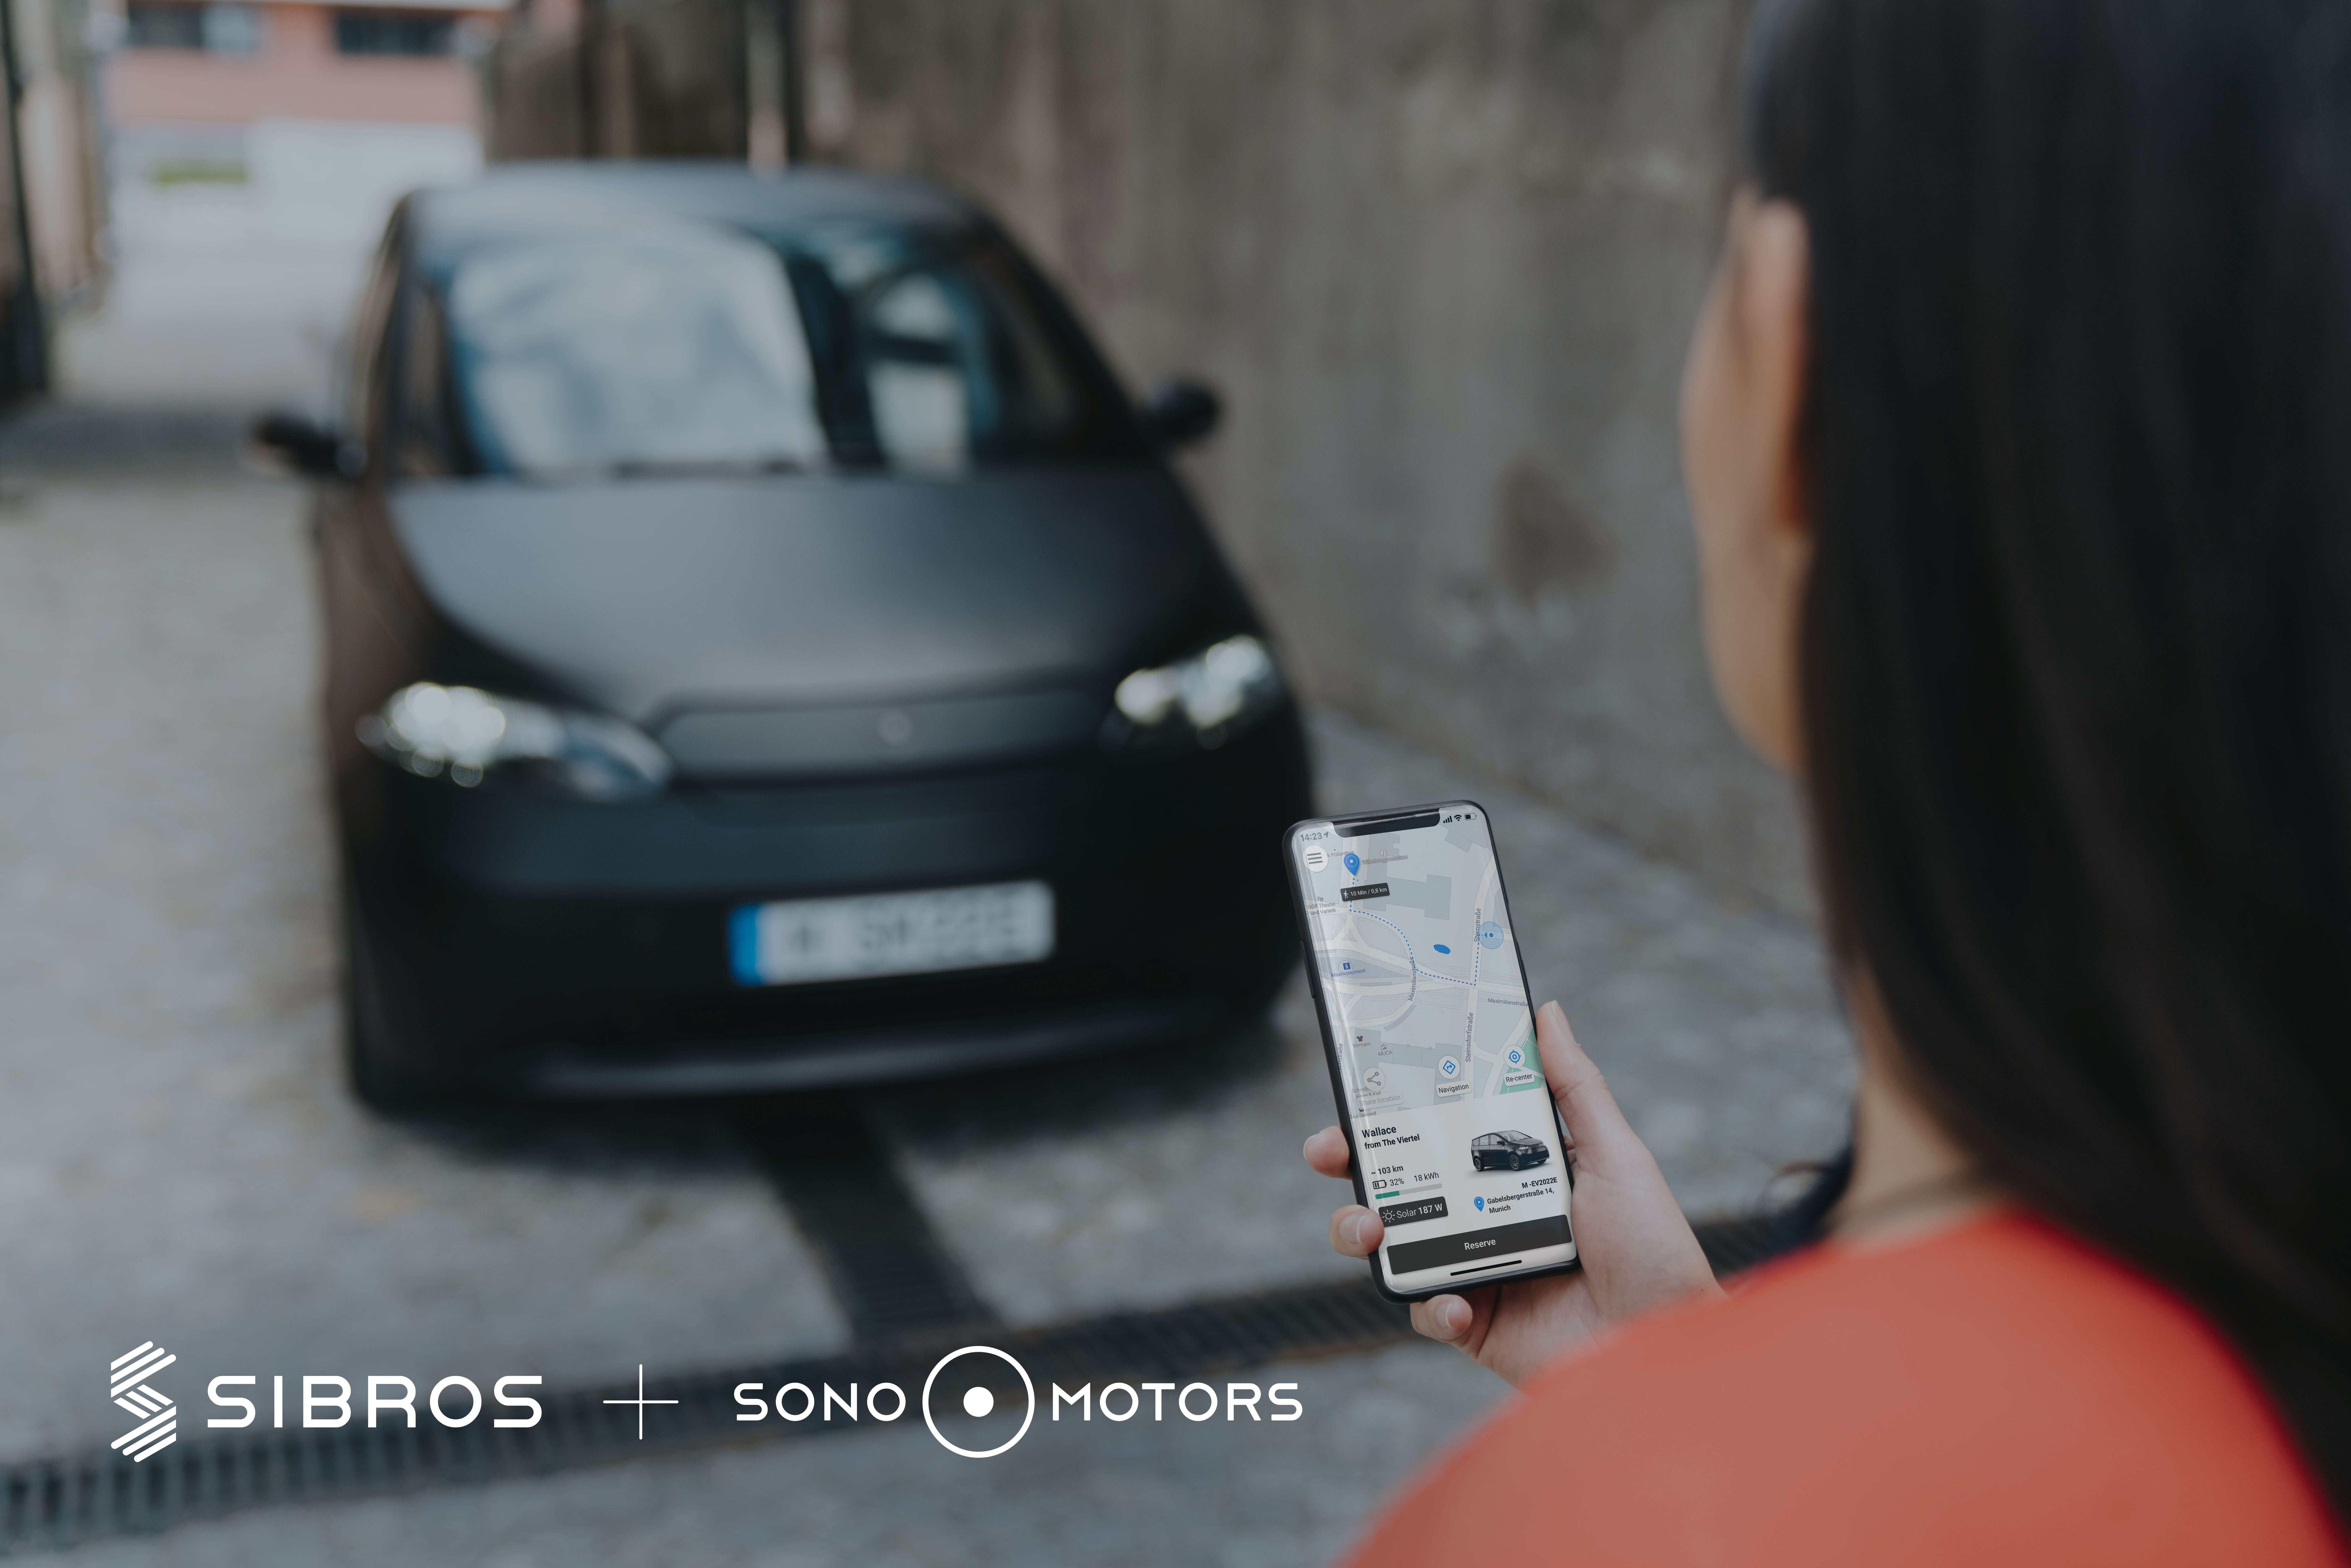 Sibros + Sono Motors - FINAL IMAGE